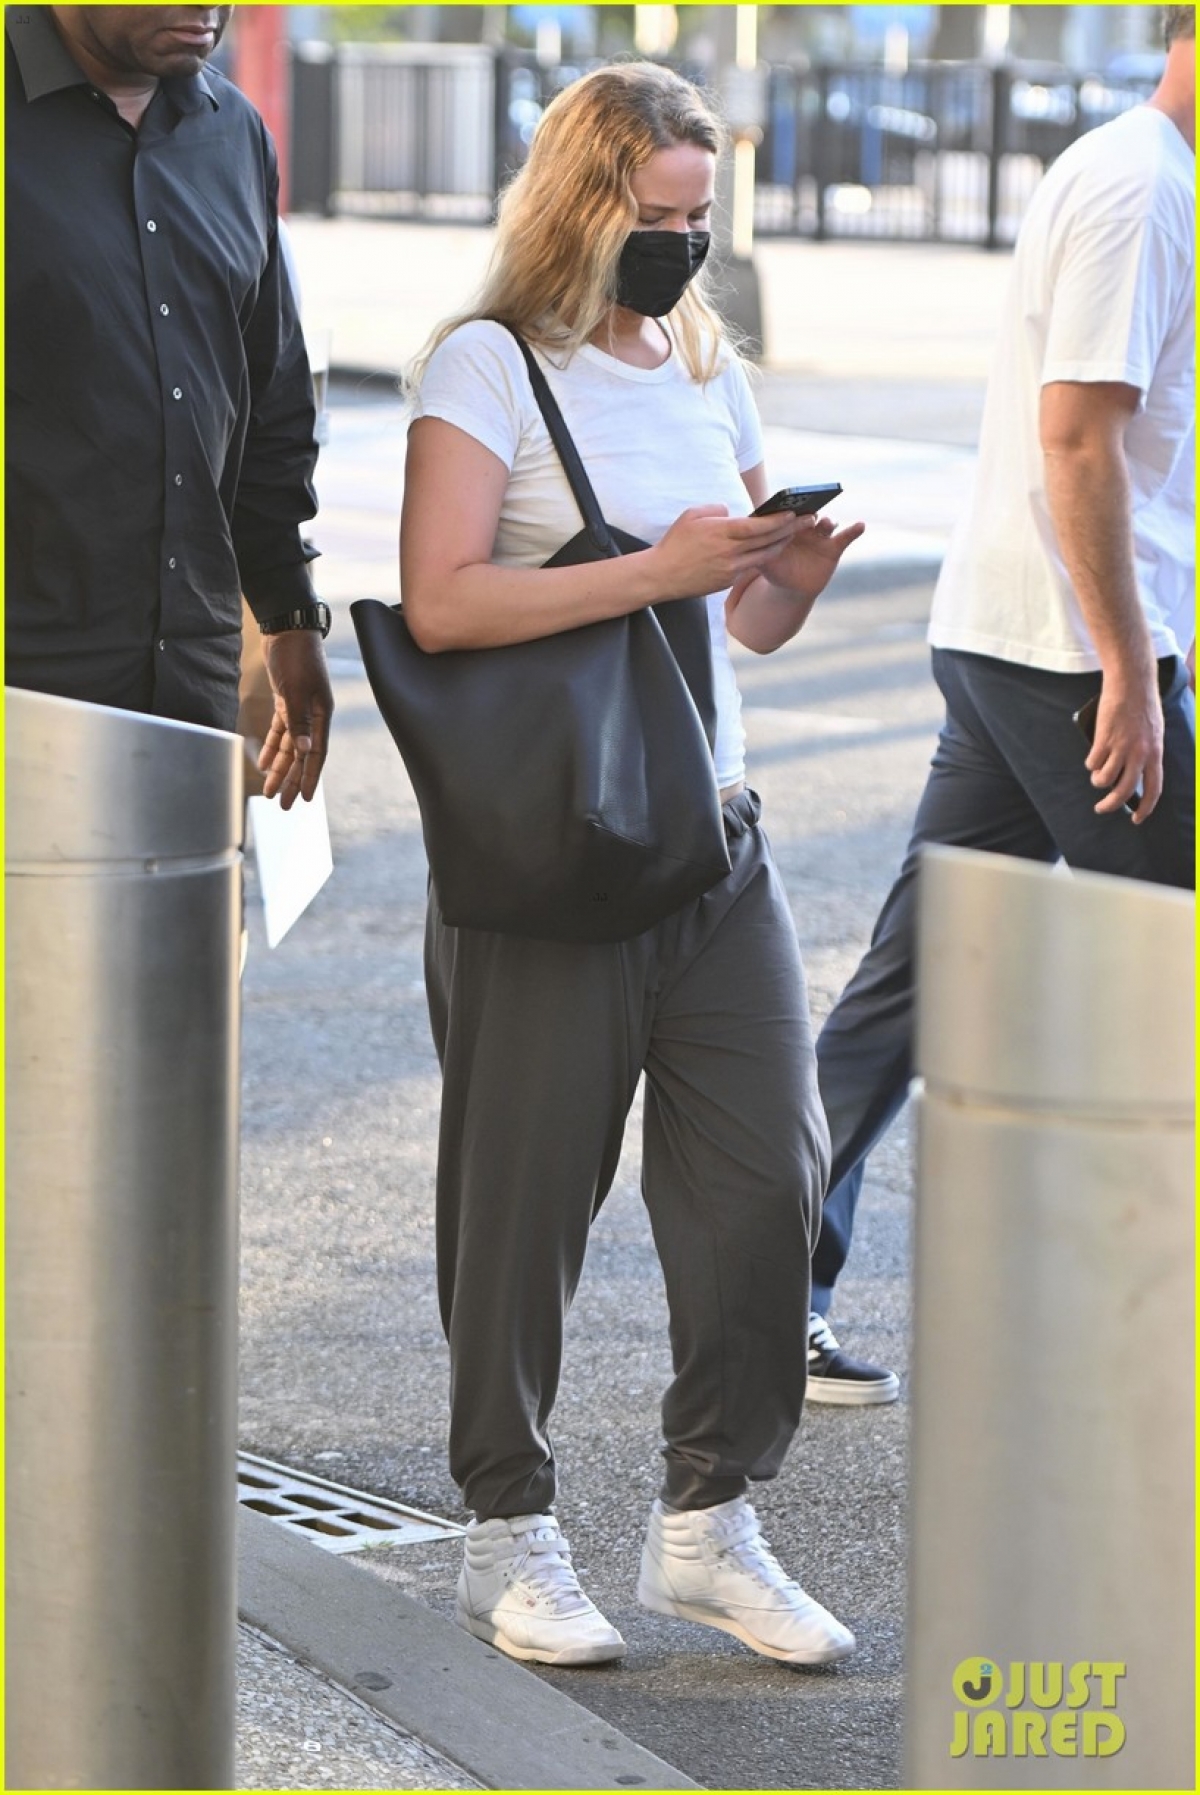 Vợ chồng Jennifer Lawrence lên đồ đồng điệu tái xuất ở sân bay - Ảnh 4.